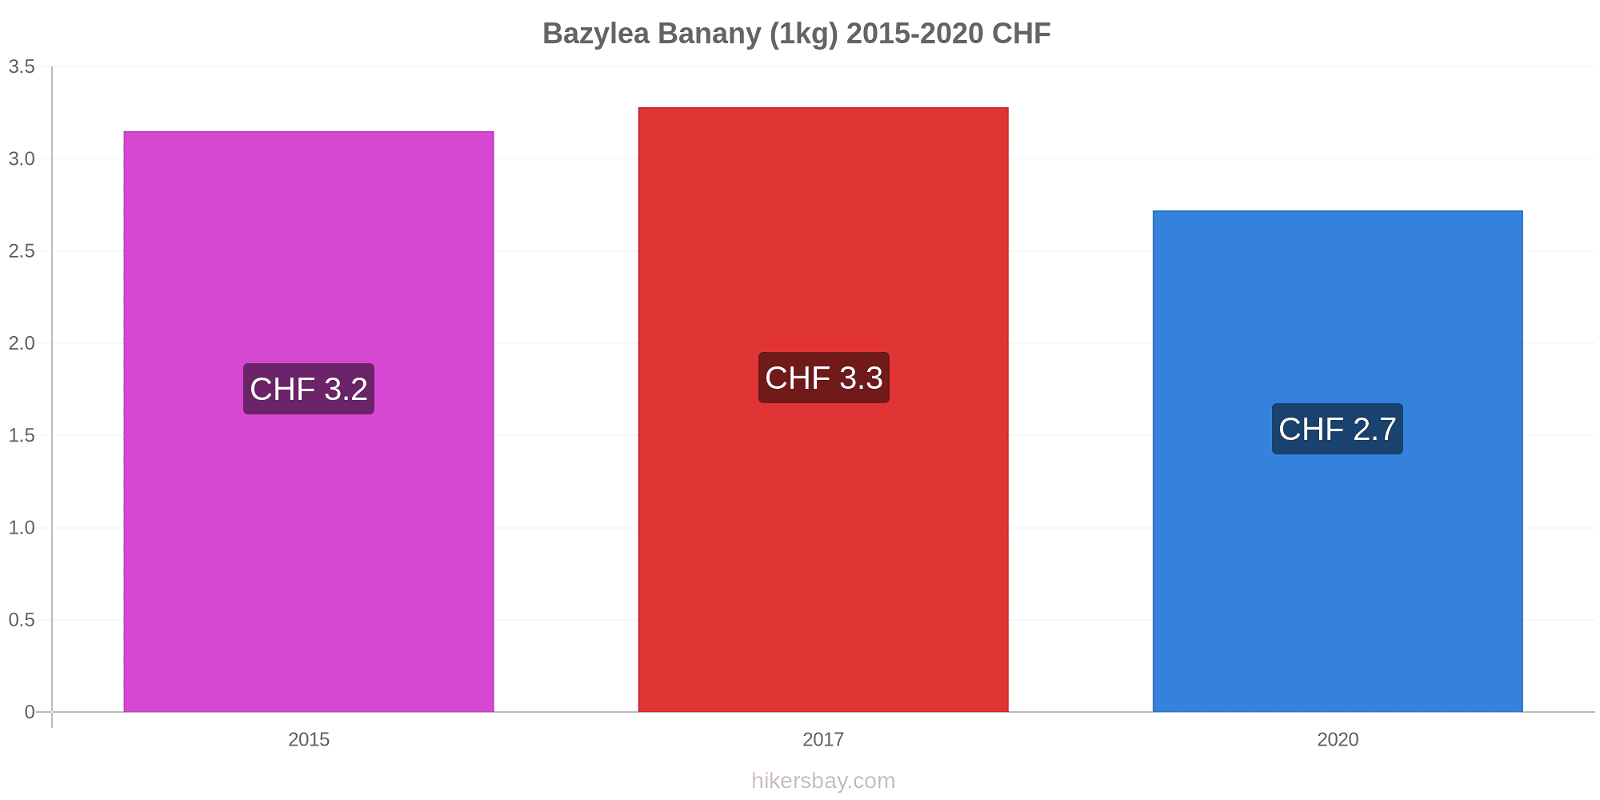 Bazylea zmiany cen Banany (1kg) hikersbay.com